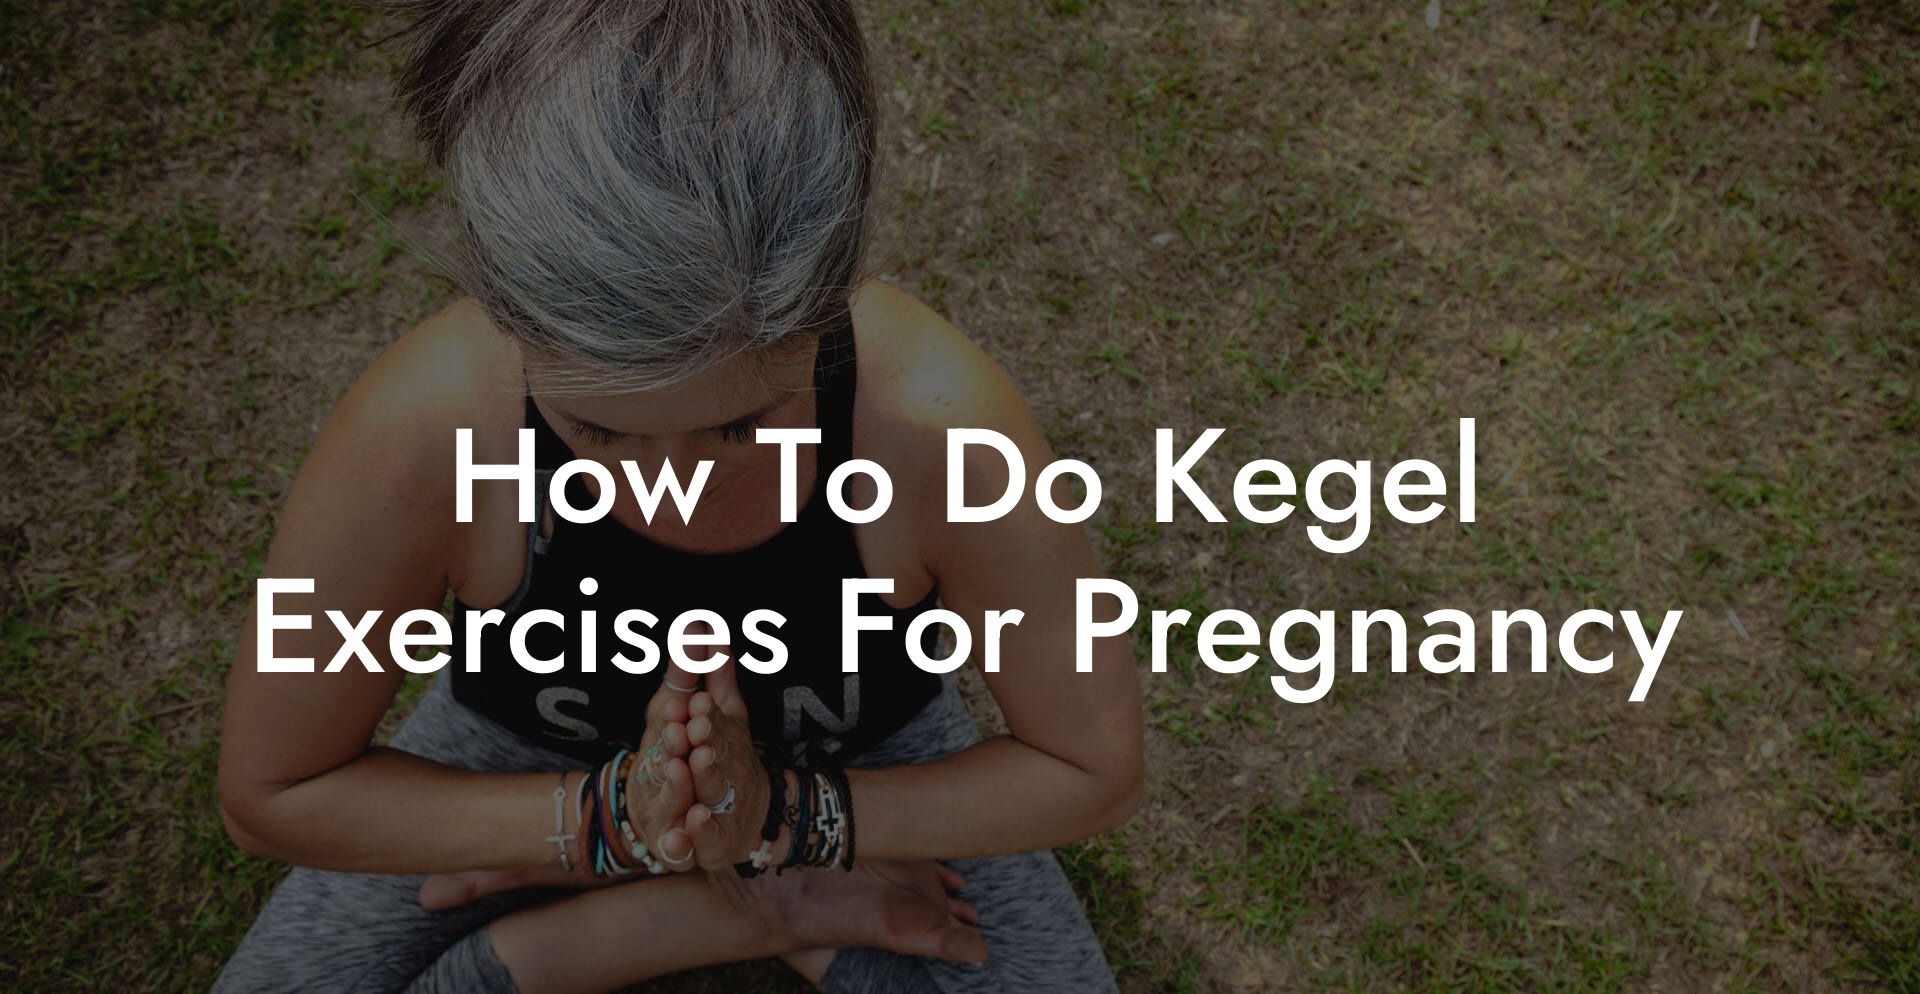 How To Do Kegel Exercises For Pregnancy